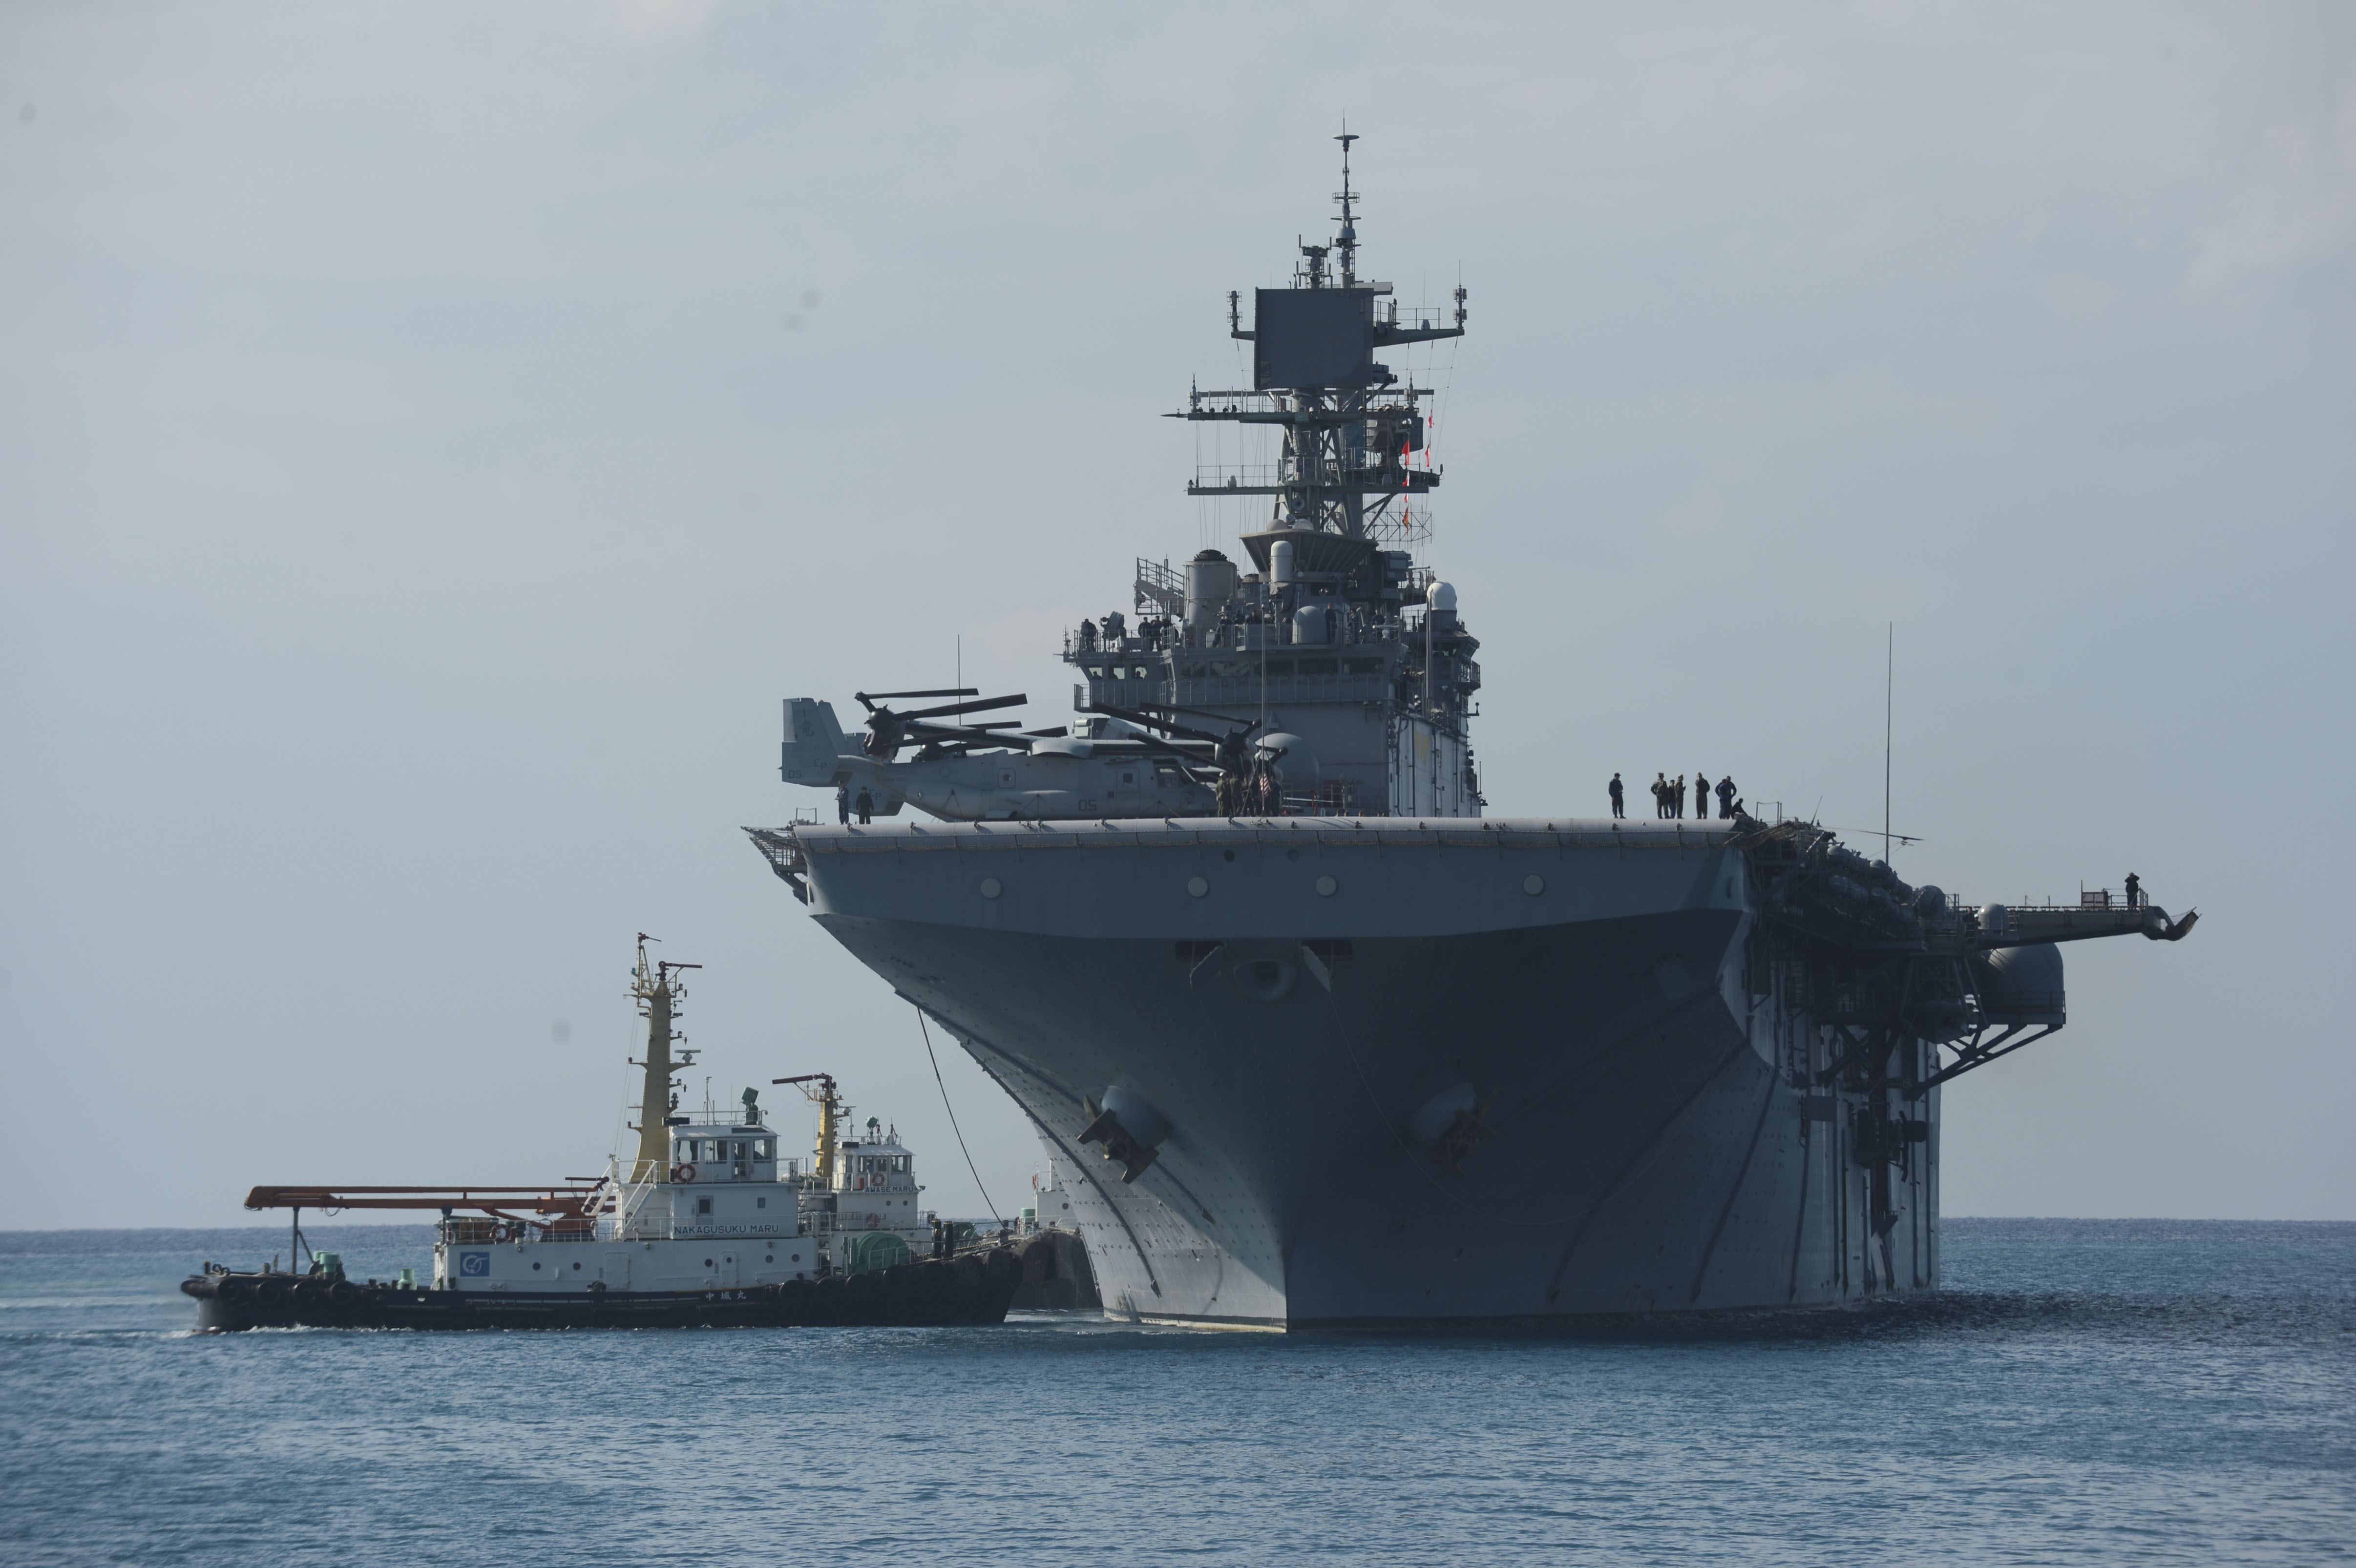 USS BONHOMME RICHARD LHD-6 am 22.02.2014 vor Okinawa